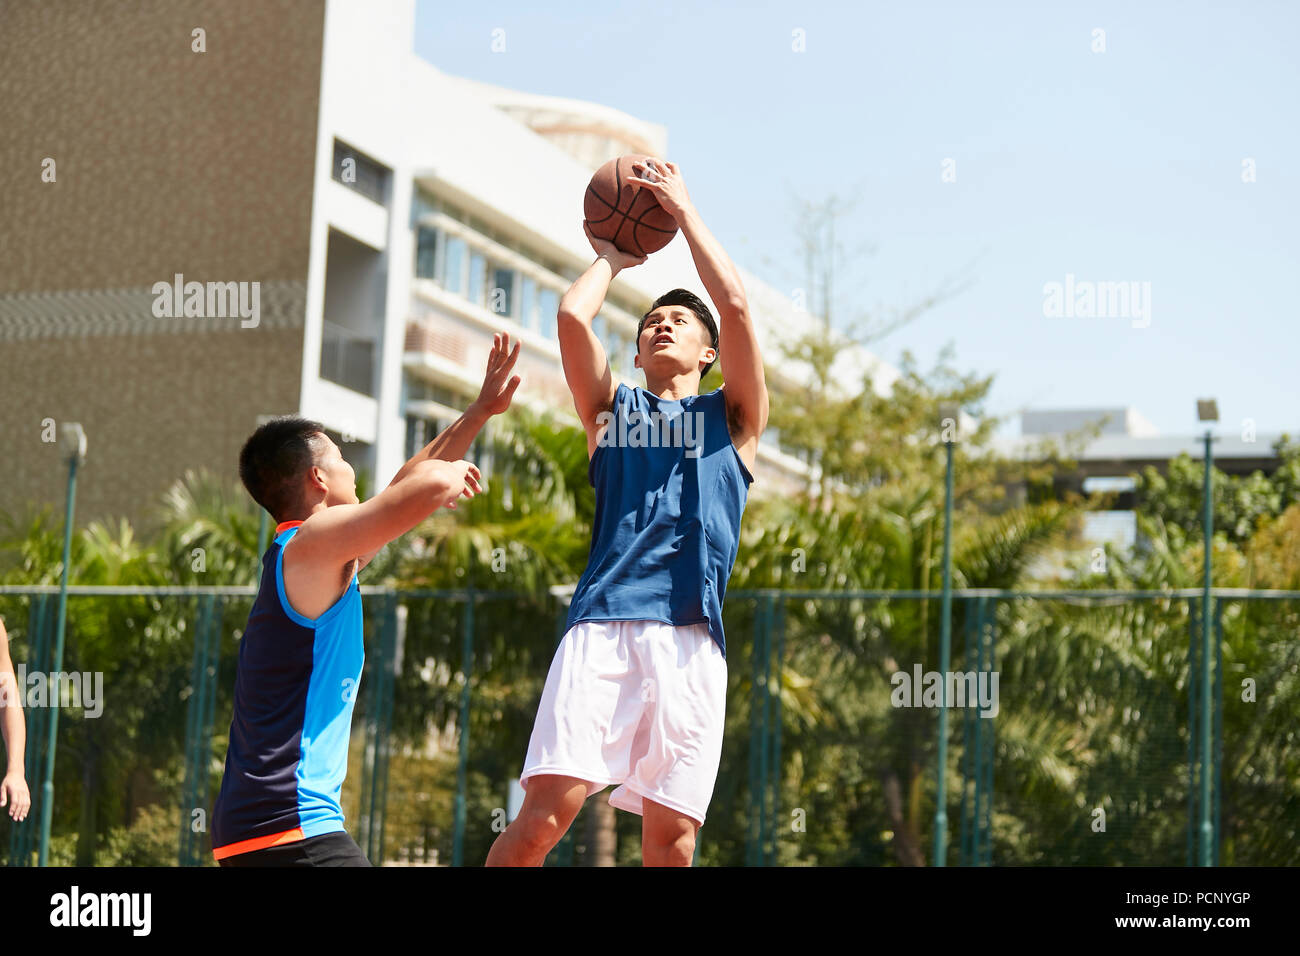 Young Asian basket-ball joueur qui place un tir alors que la défense adversaire jouer essayer de bloquer la balle. Banque D'Images